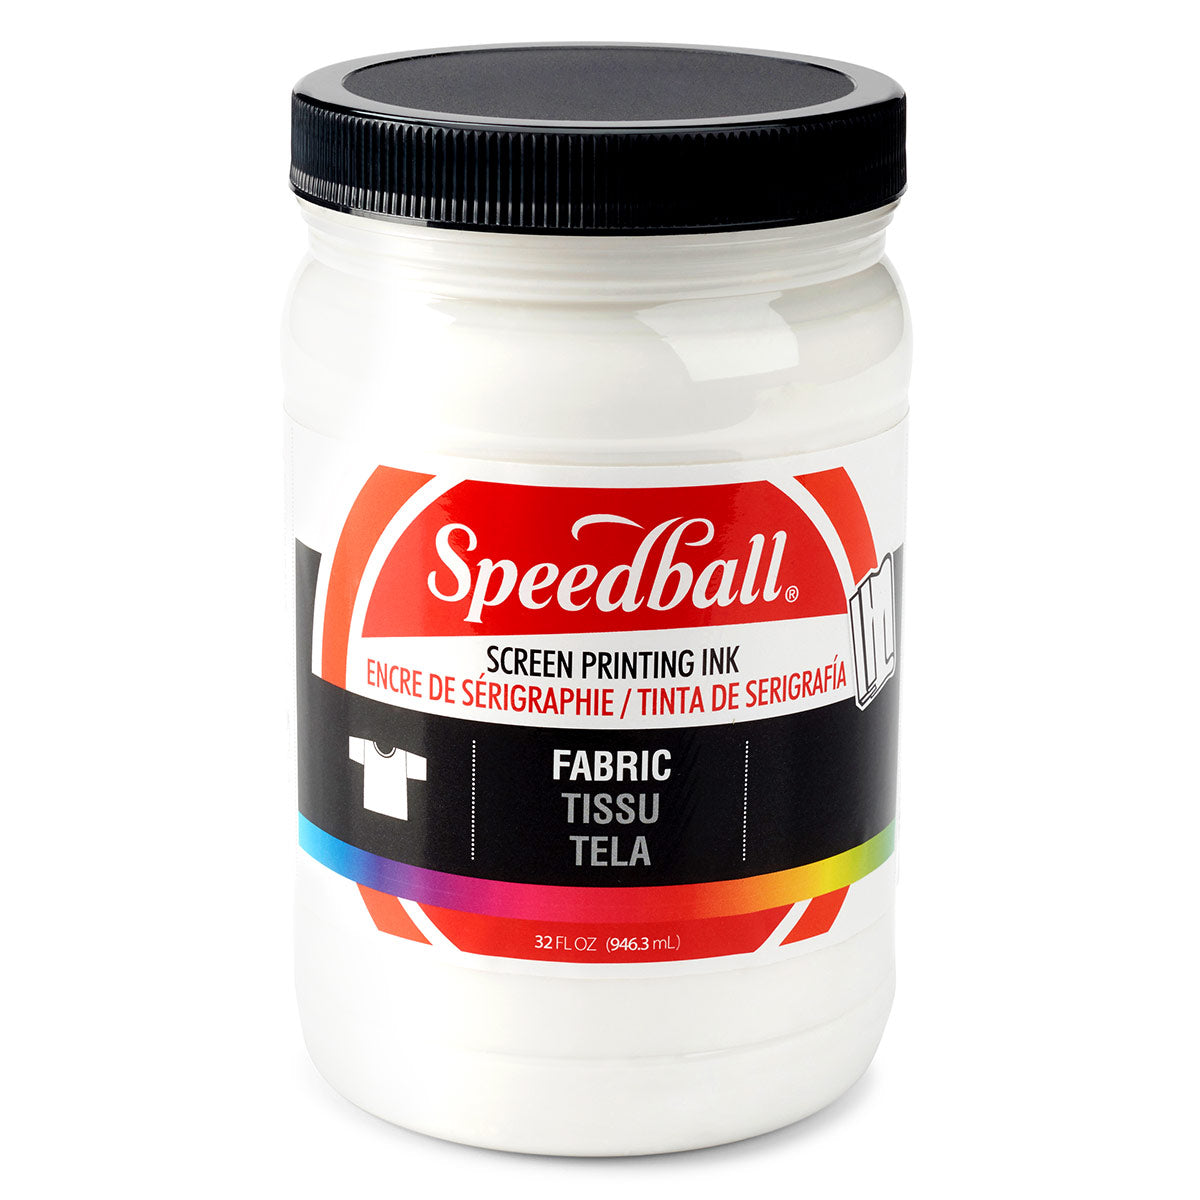 Speedball-Stoff Siebdruck Tinte 946ml (32oz) -Weiß